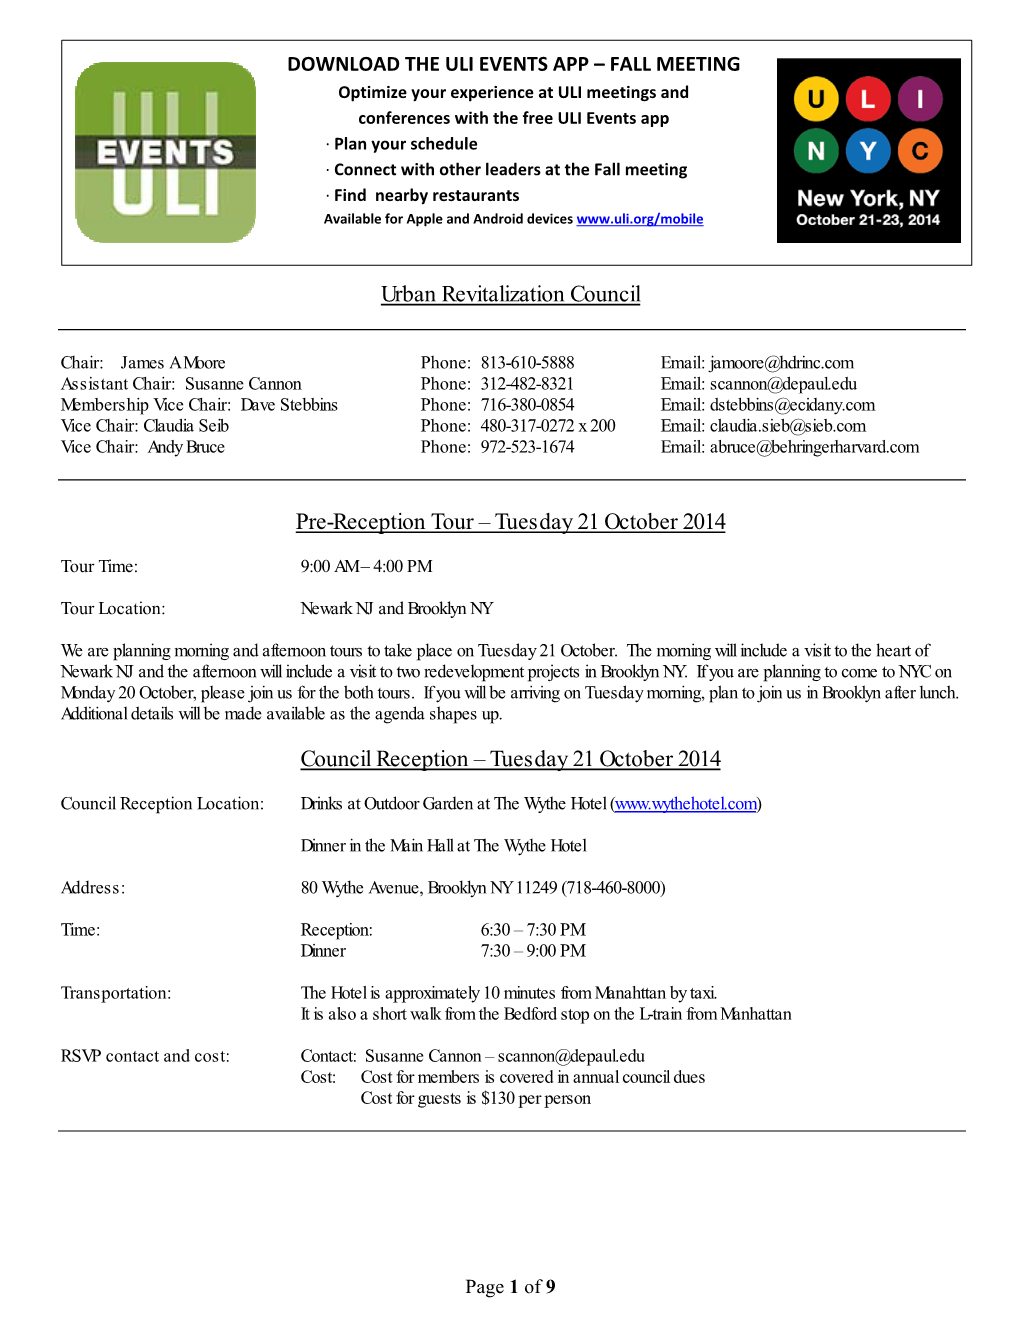 Tuesday 21 October 2014 Council Reception